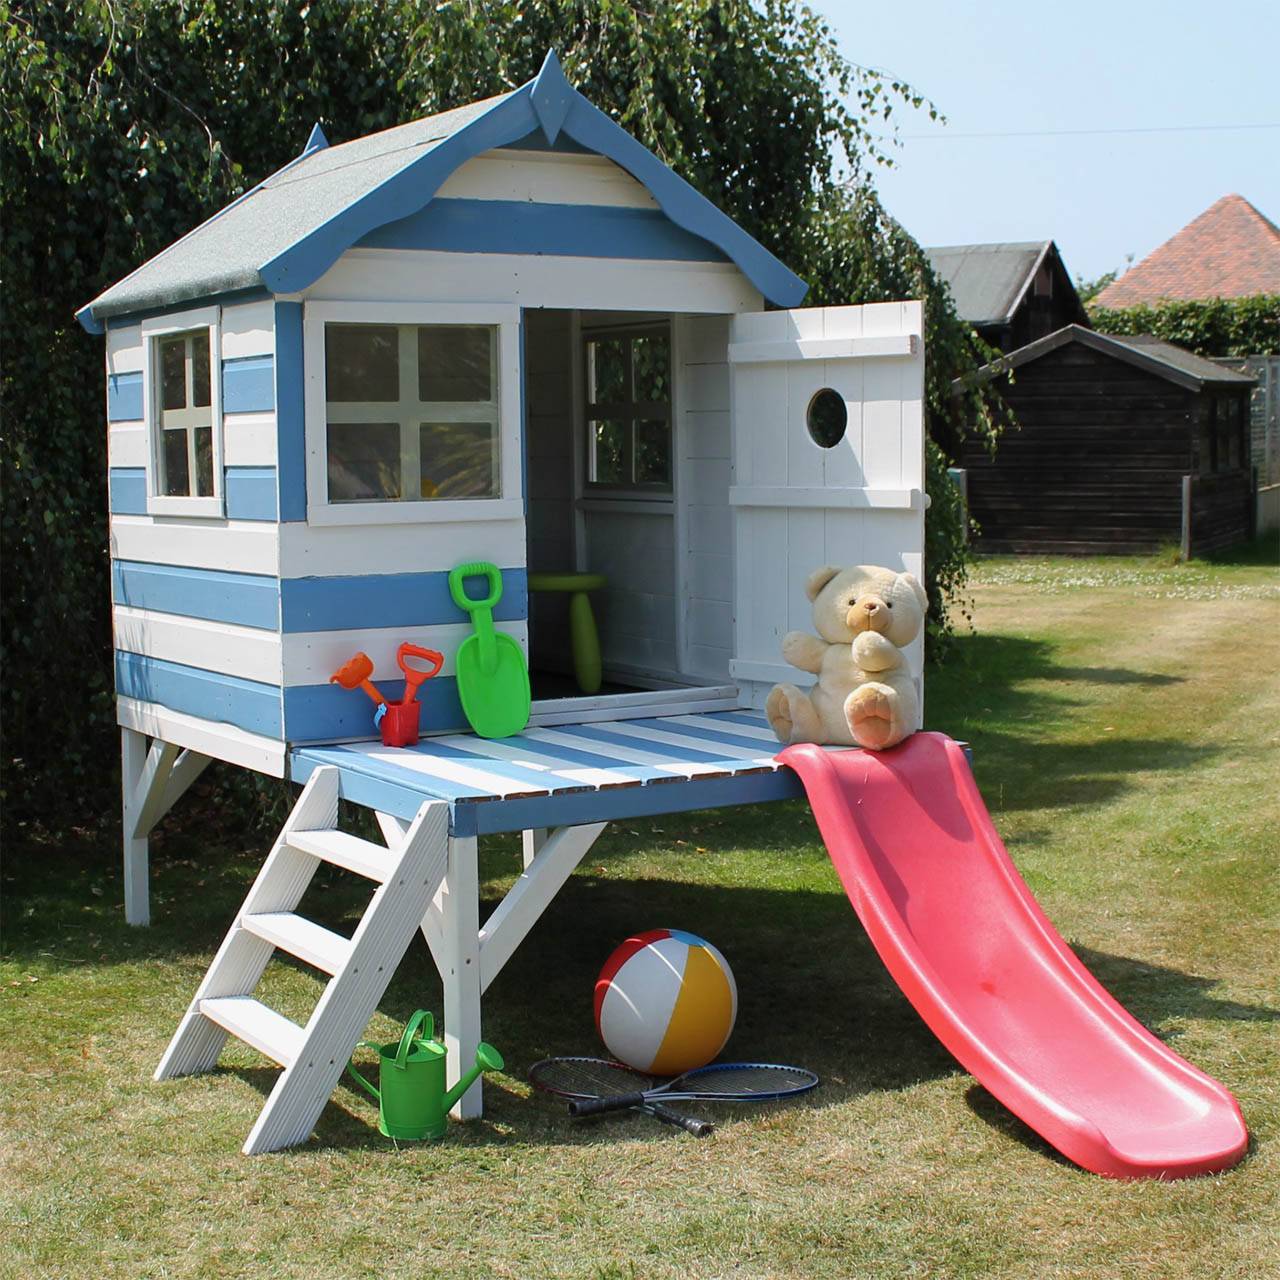 Игровой домик для детей: как построить на даче, во дворе, в квартире | строй легко